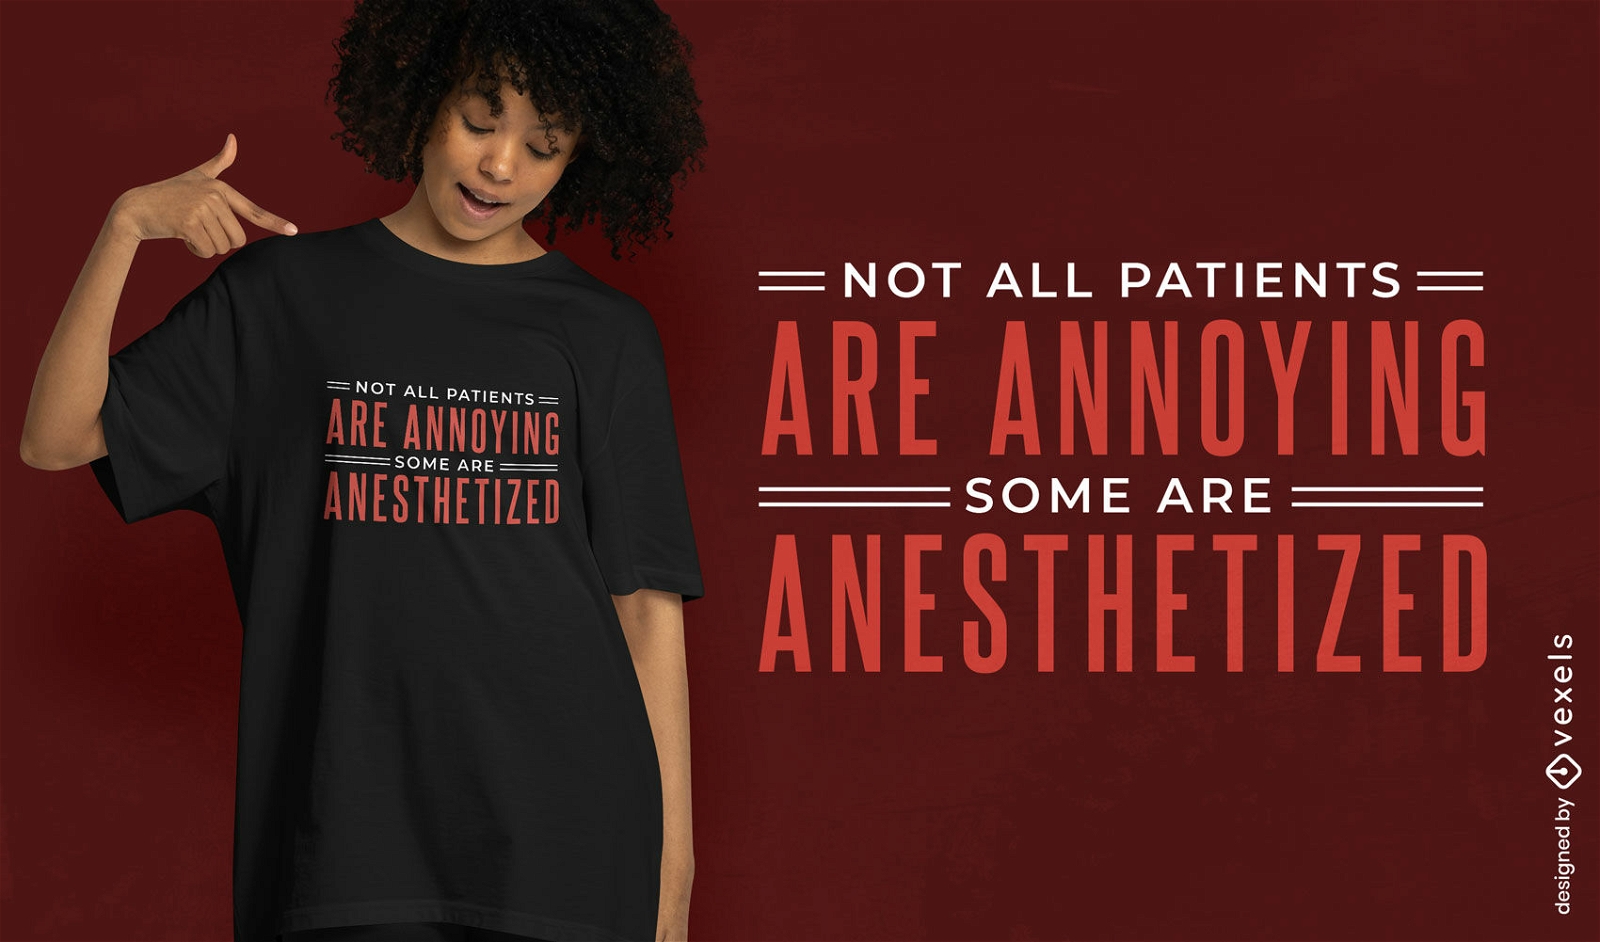 Anesthetized patients t-shirt design